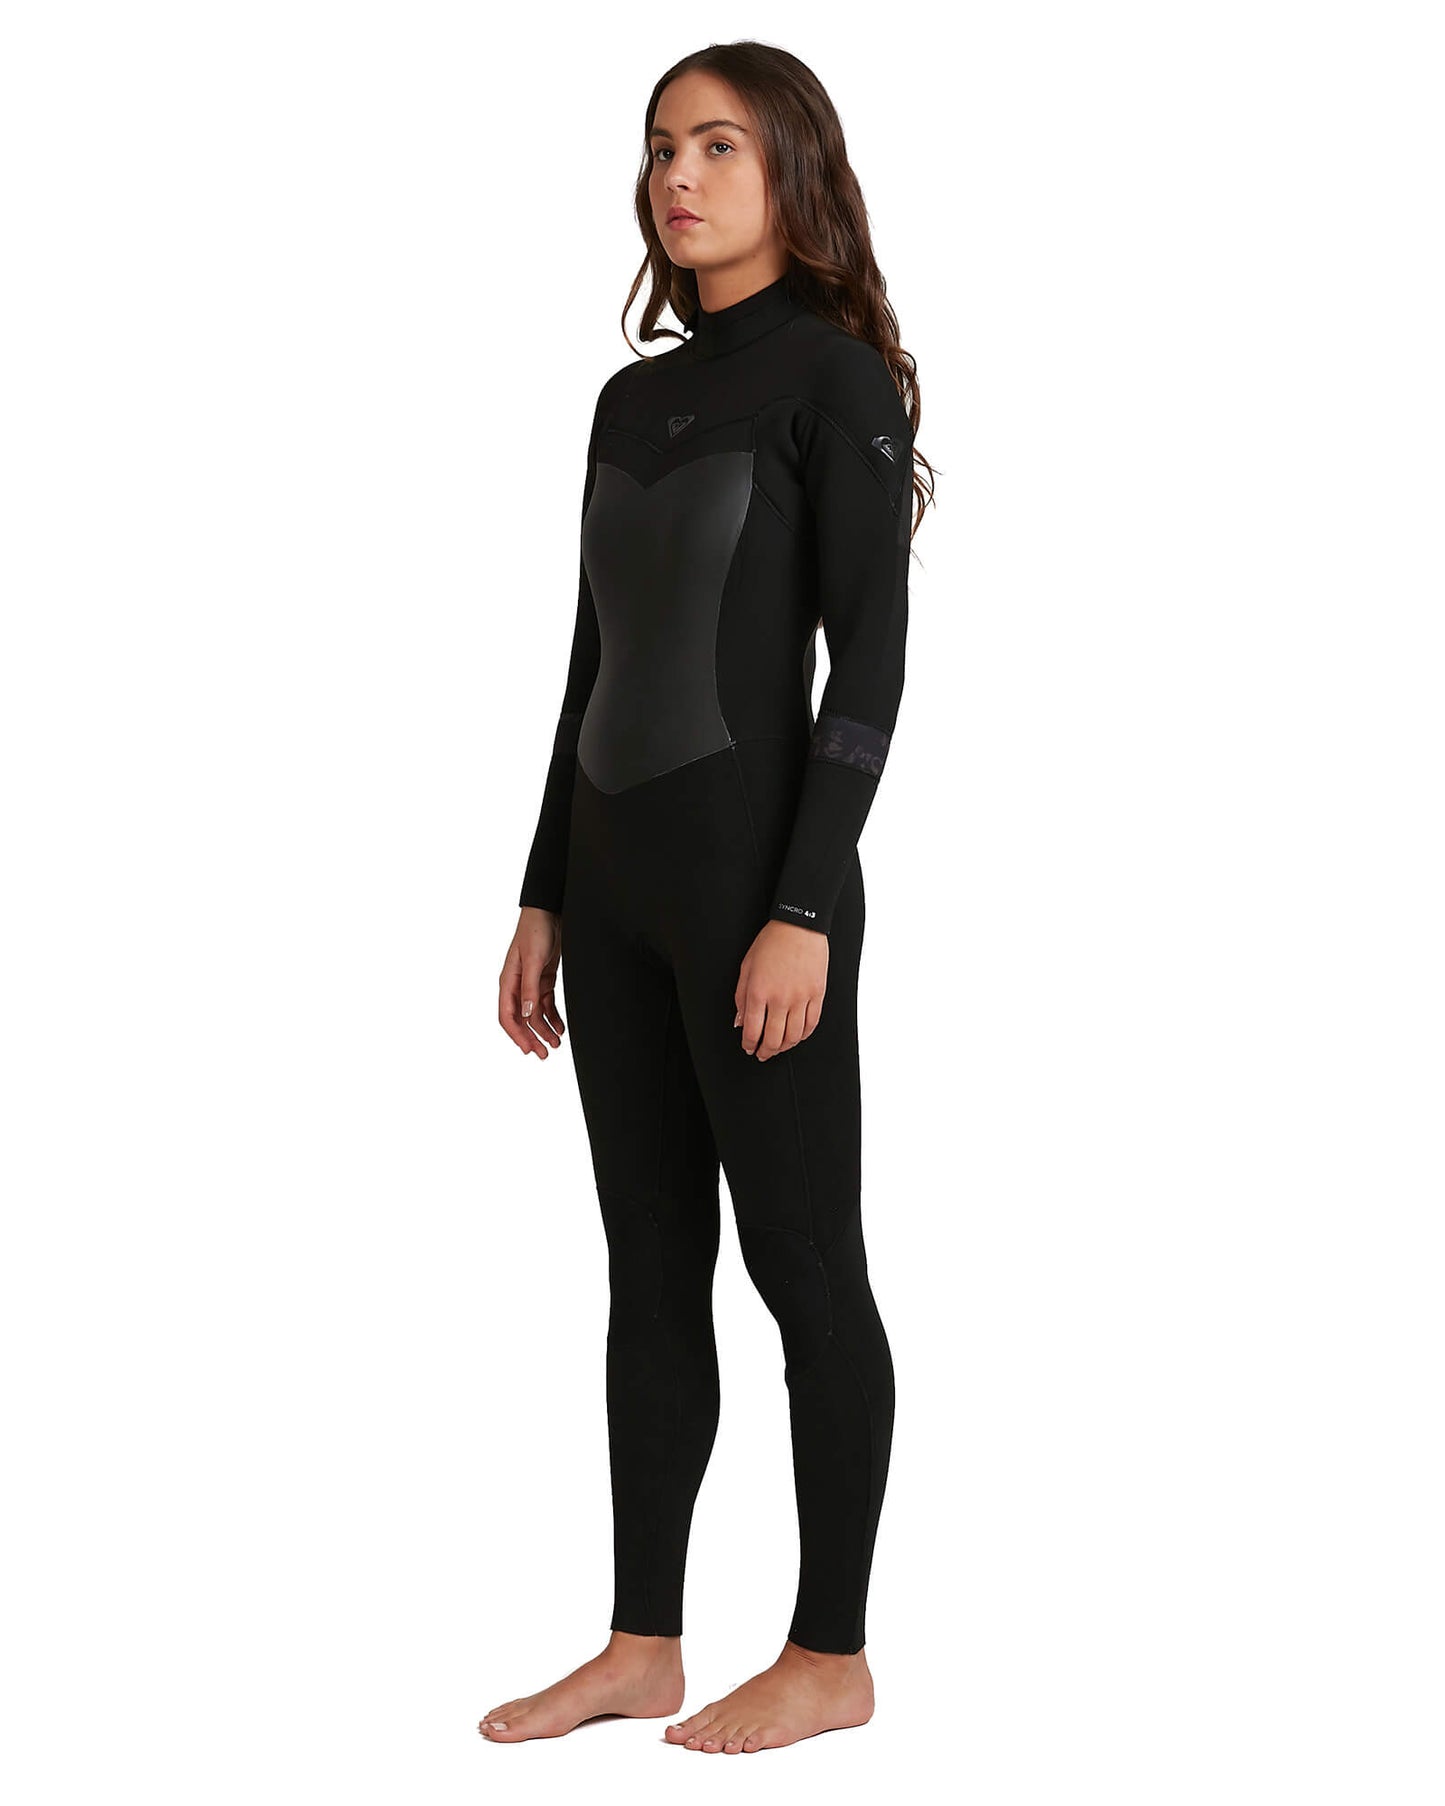 5/4/3mm Women's Roxy SYNCRO Full Wetsuit